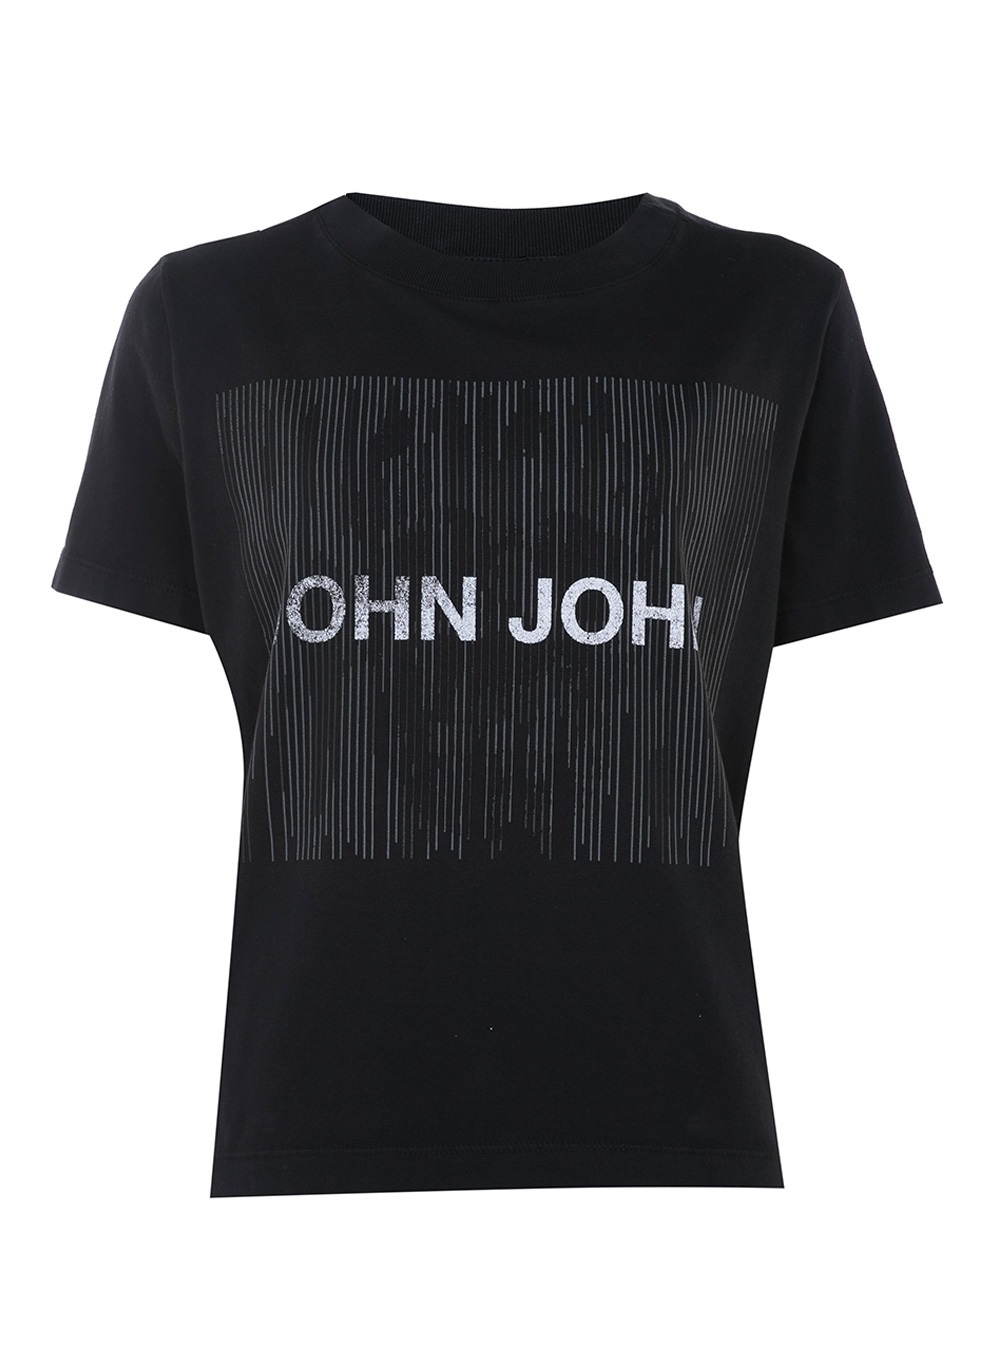 Camiseta Jco Mujer 3 Style - Jcolivier Portugal